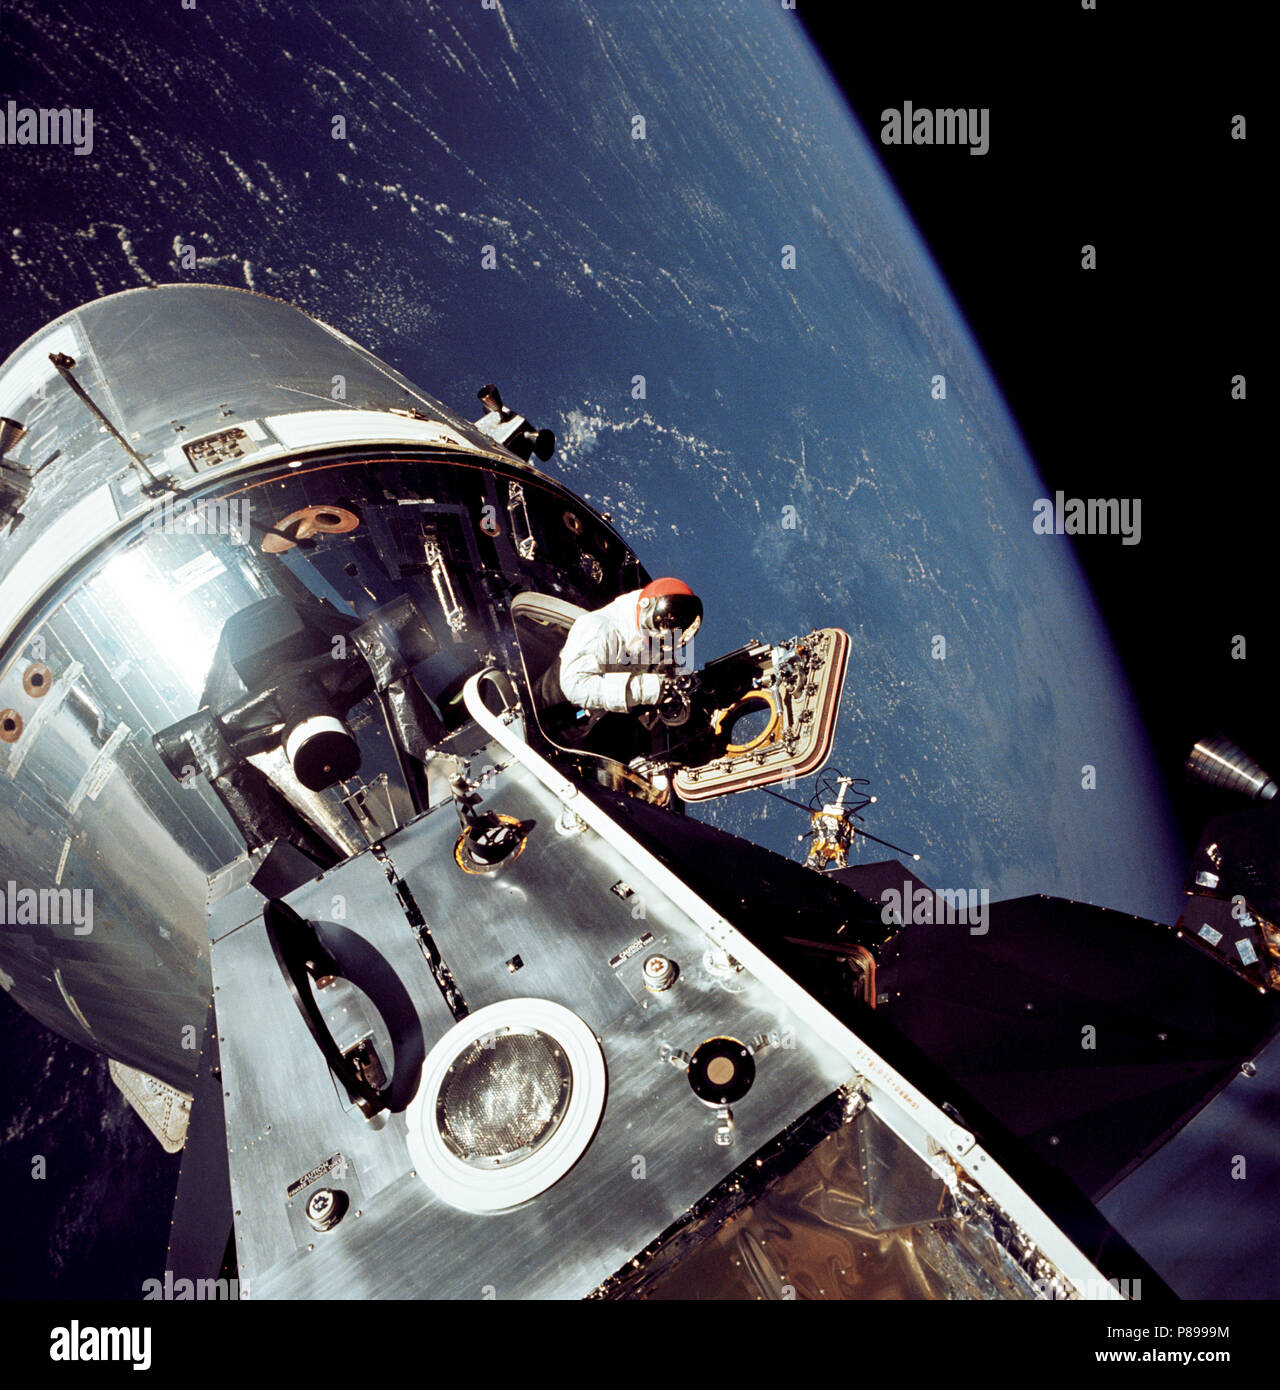 Vista del agganciato Apollo 9 di comando e di moduli di servizio (CSM) e il modulo lunare (LM), durante l'astronauta David R. Scott's stand-up attività extravehicular (EVA), il giorno 4 Apollo 9 missione Foto Stock